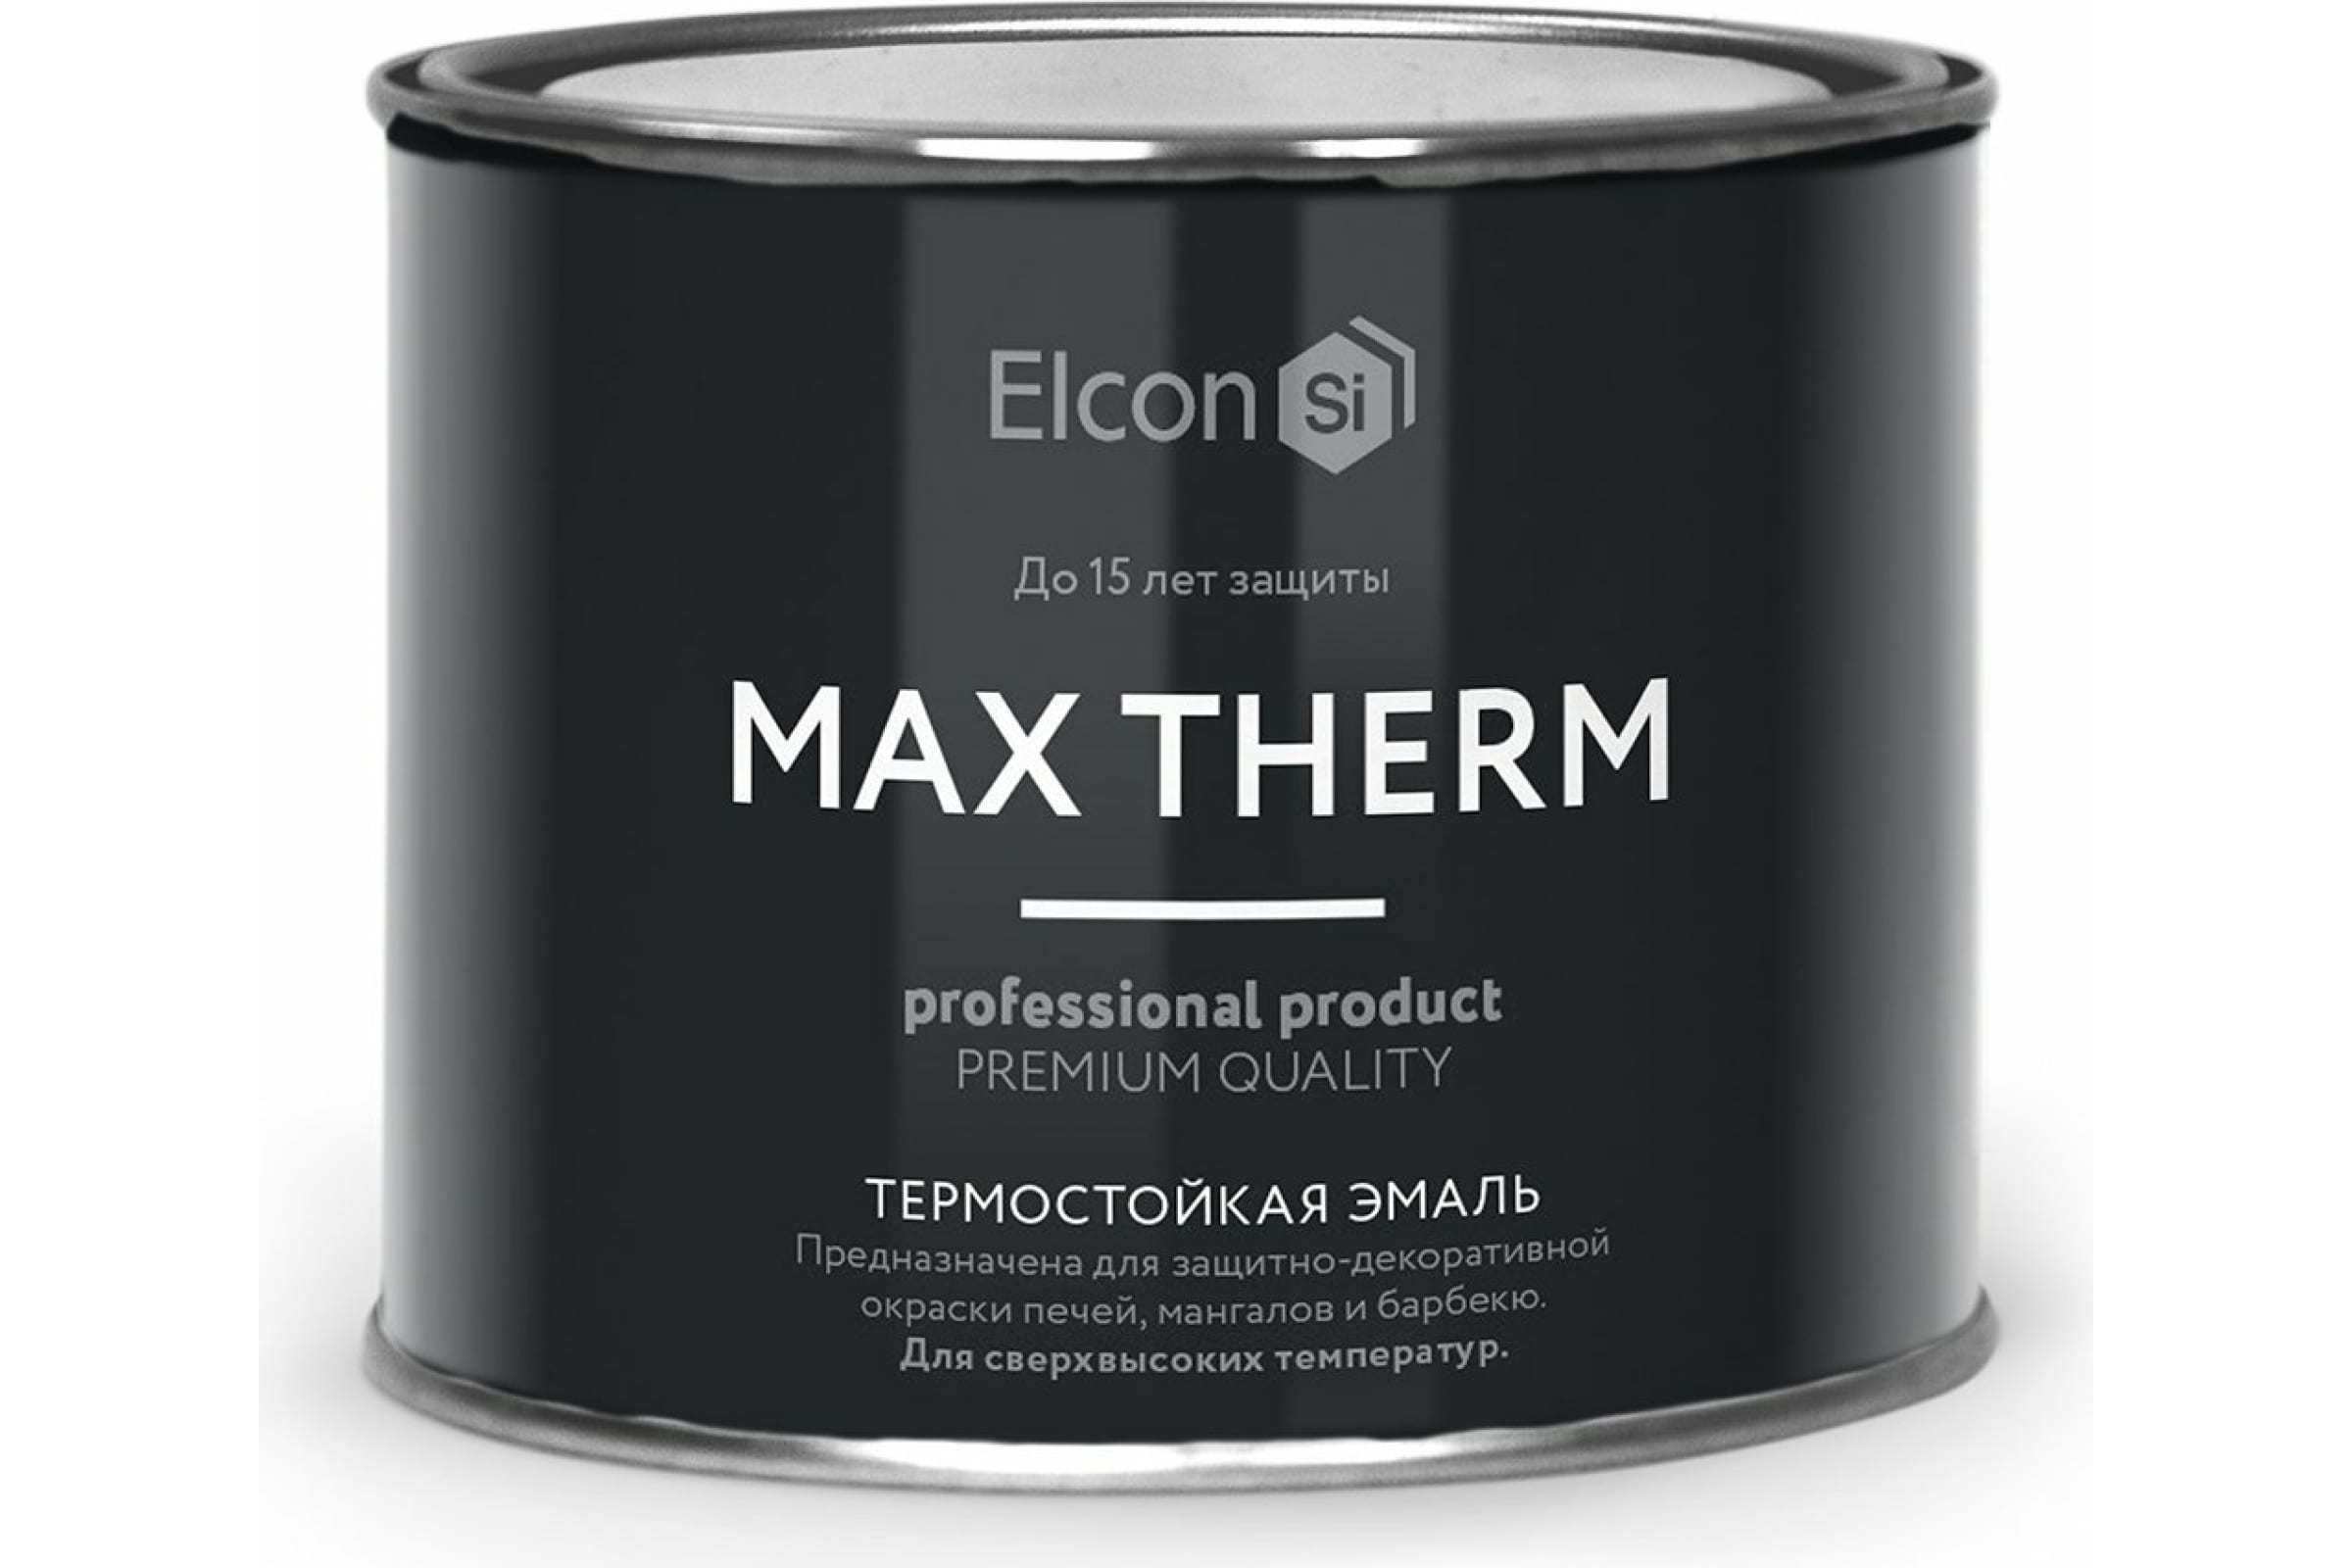 Термостойкая антикоррозионная эмаль Elcon Max Therm до 400 градусов, 0,4 л, синяя термостойкая антикоррозионная эмаль elcon max therm до 400 градусов 0 4 л серая